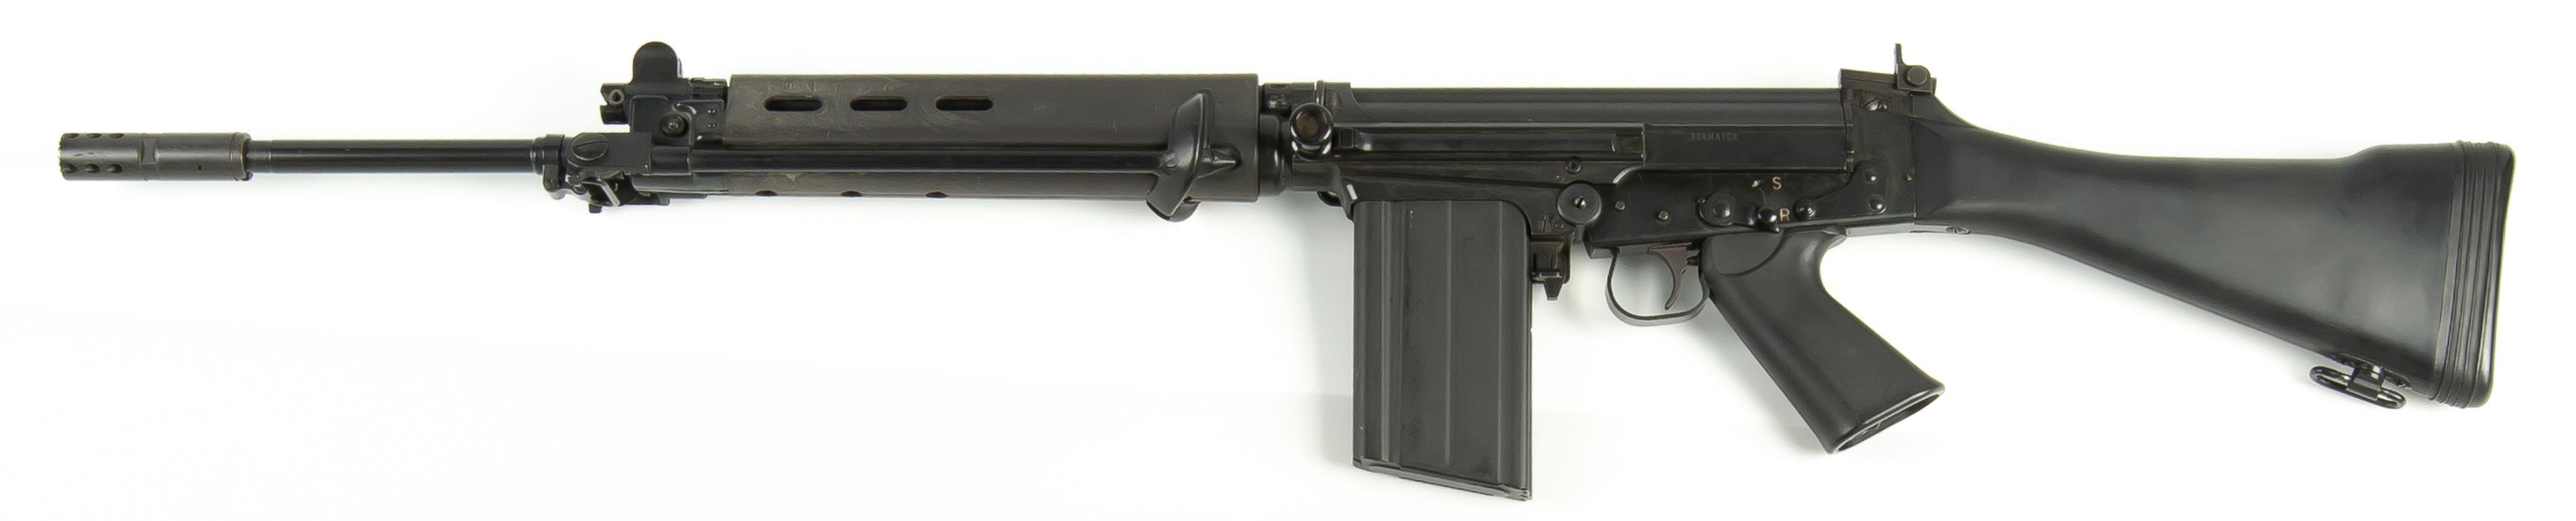 FN FAL semi-auto .308 Military-style rifle